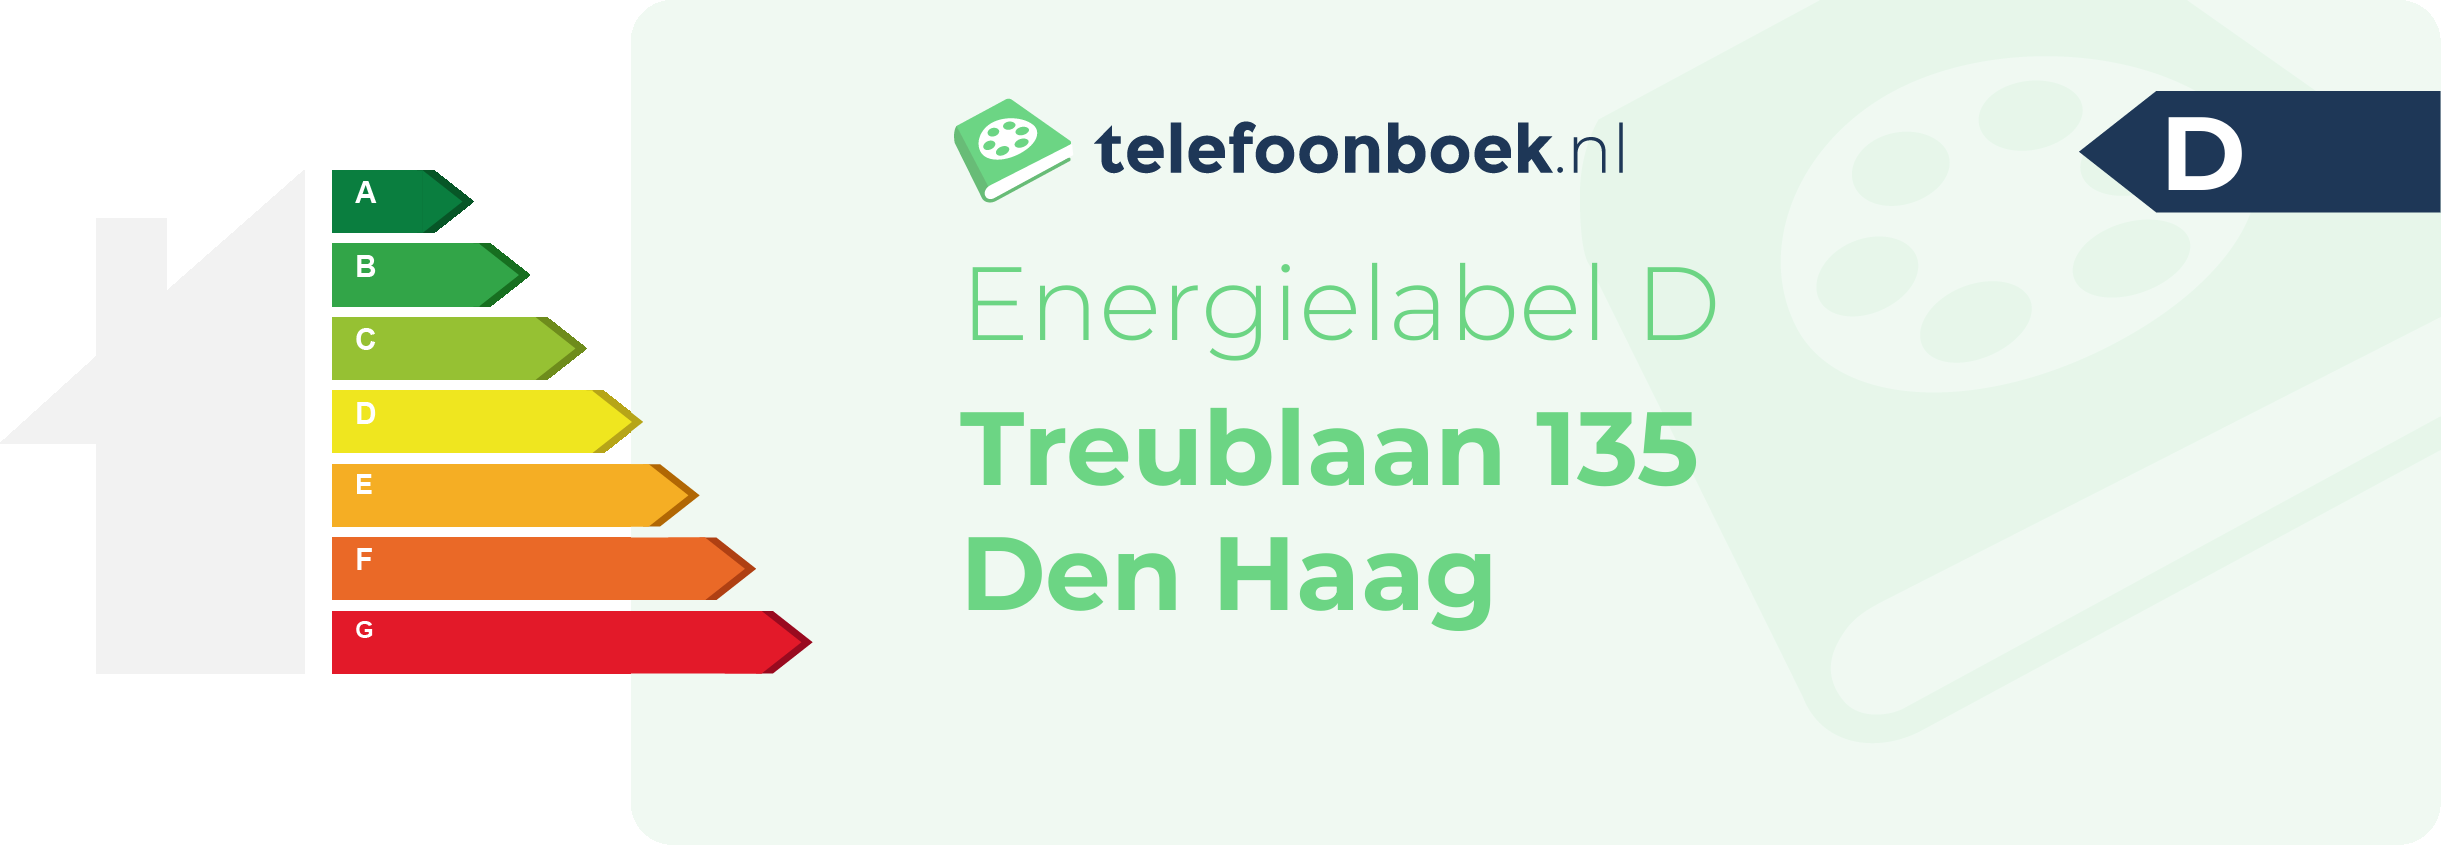 Energielabel Treublaan 135 Den Haag